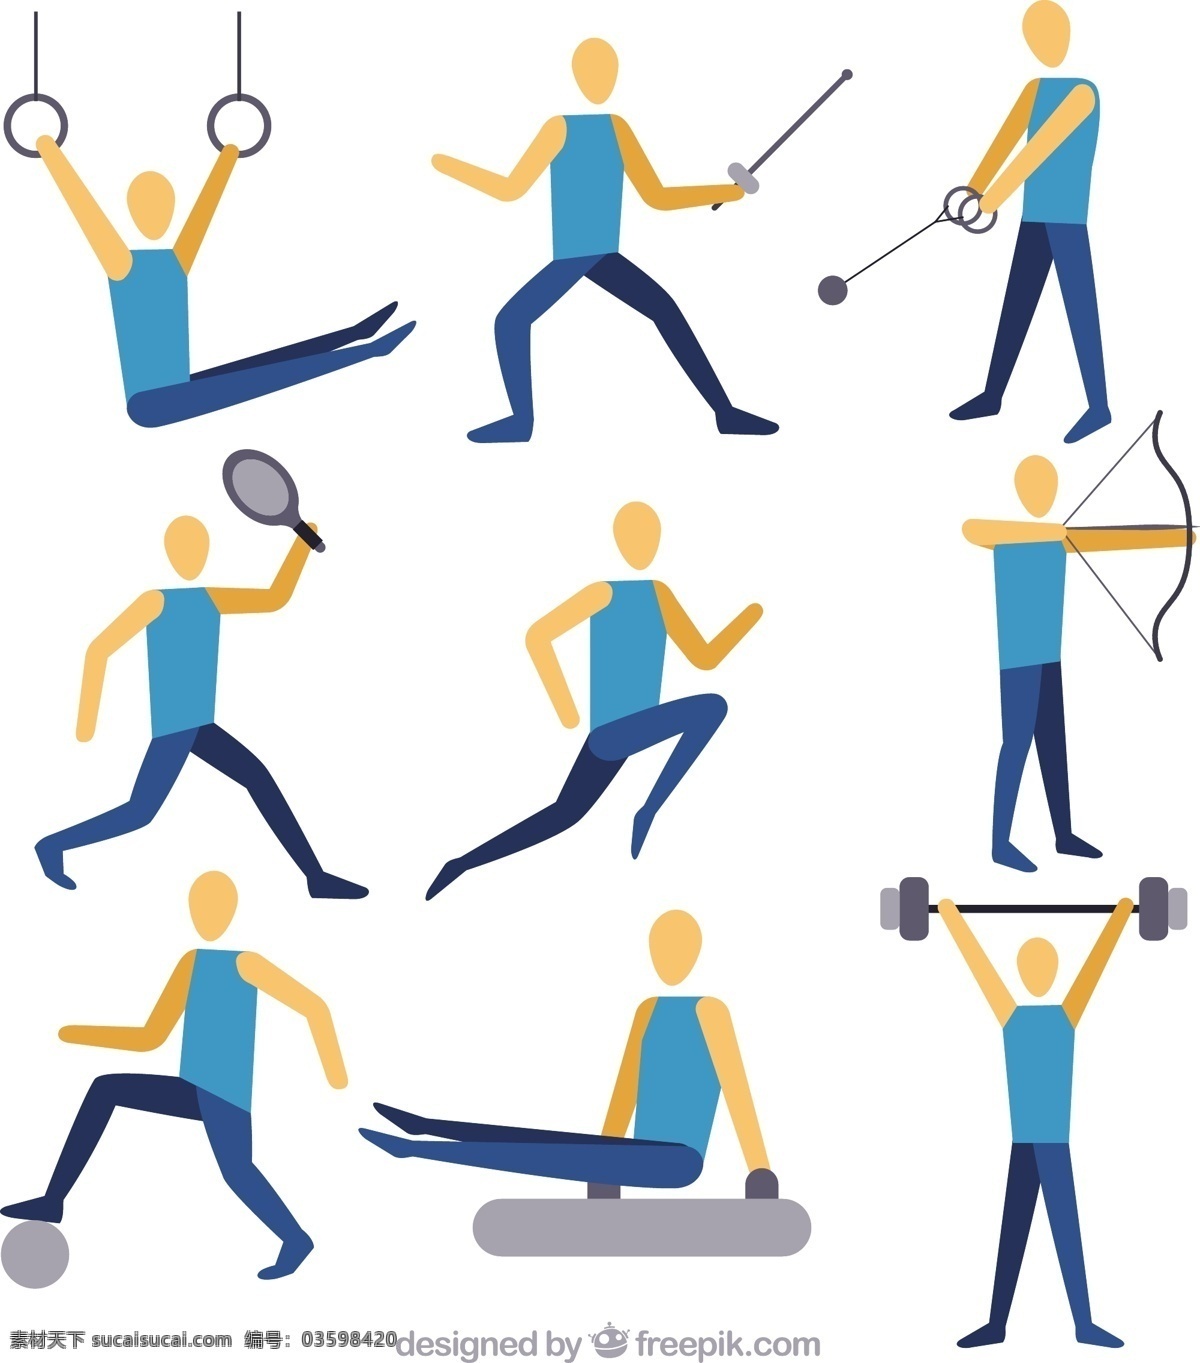 收集 做 运动 人 体育 健身 健康 弓 网球 跑步者 训练 体重 人体 人物 生活方式 运动员 锻炼